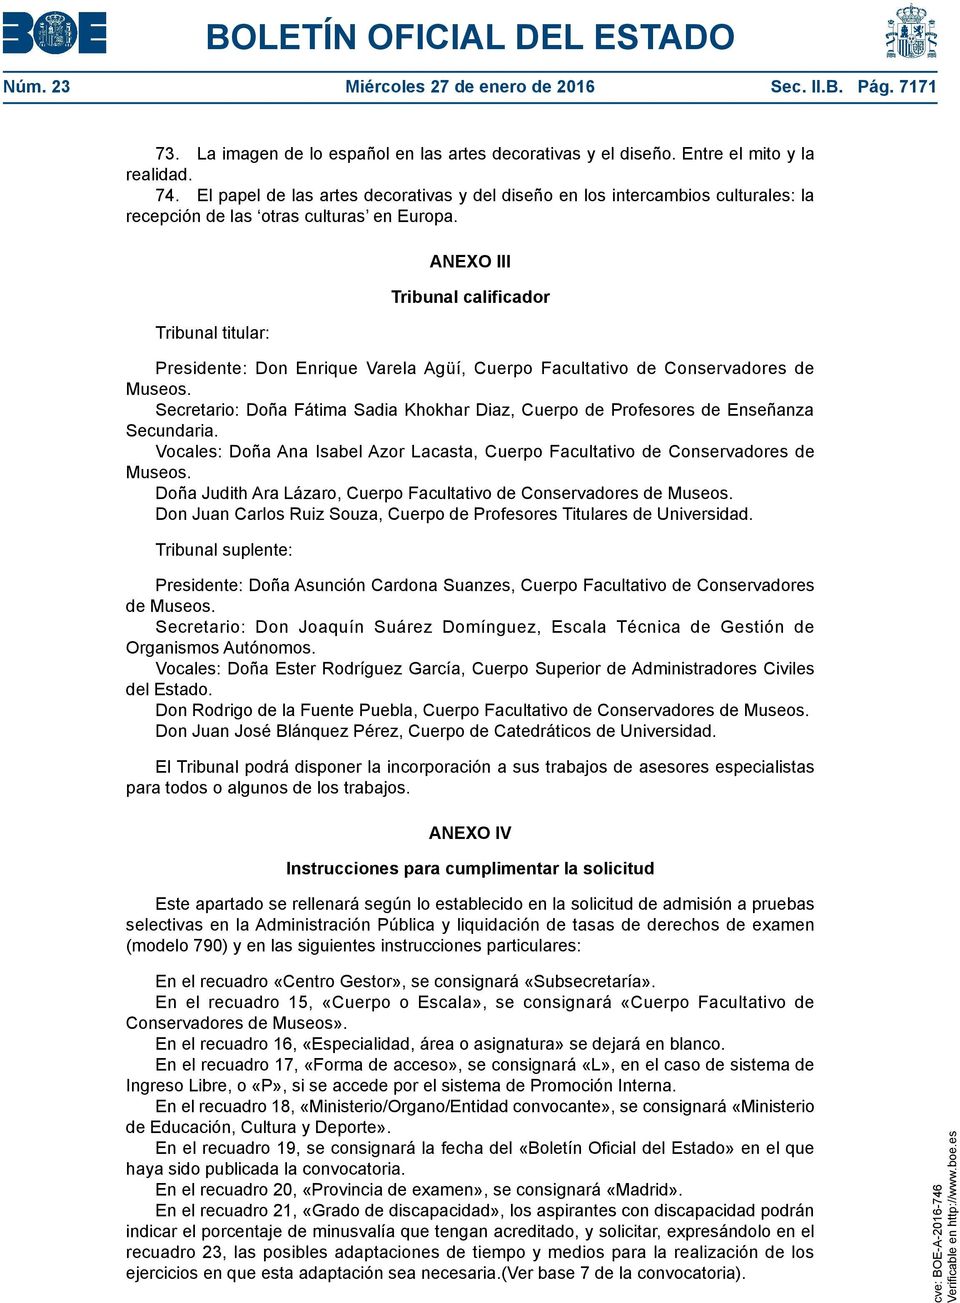 Tribunal titular: ANEXO III Tribunal calificador Presidente: Don Enrique Varela Agüí, Cuerpo Facultativo de Conservadores de Museos.